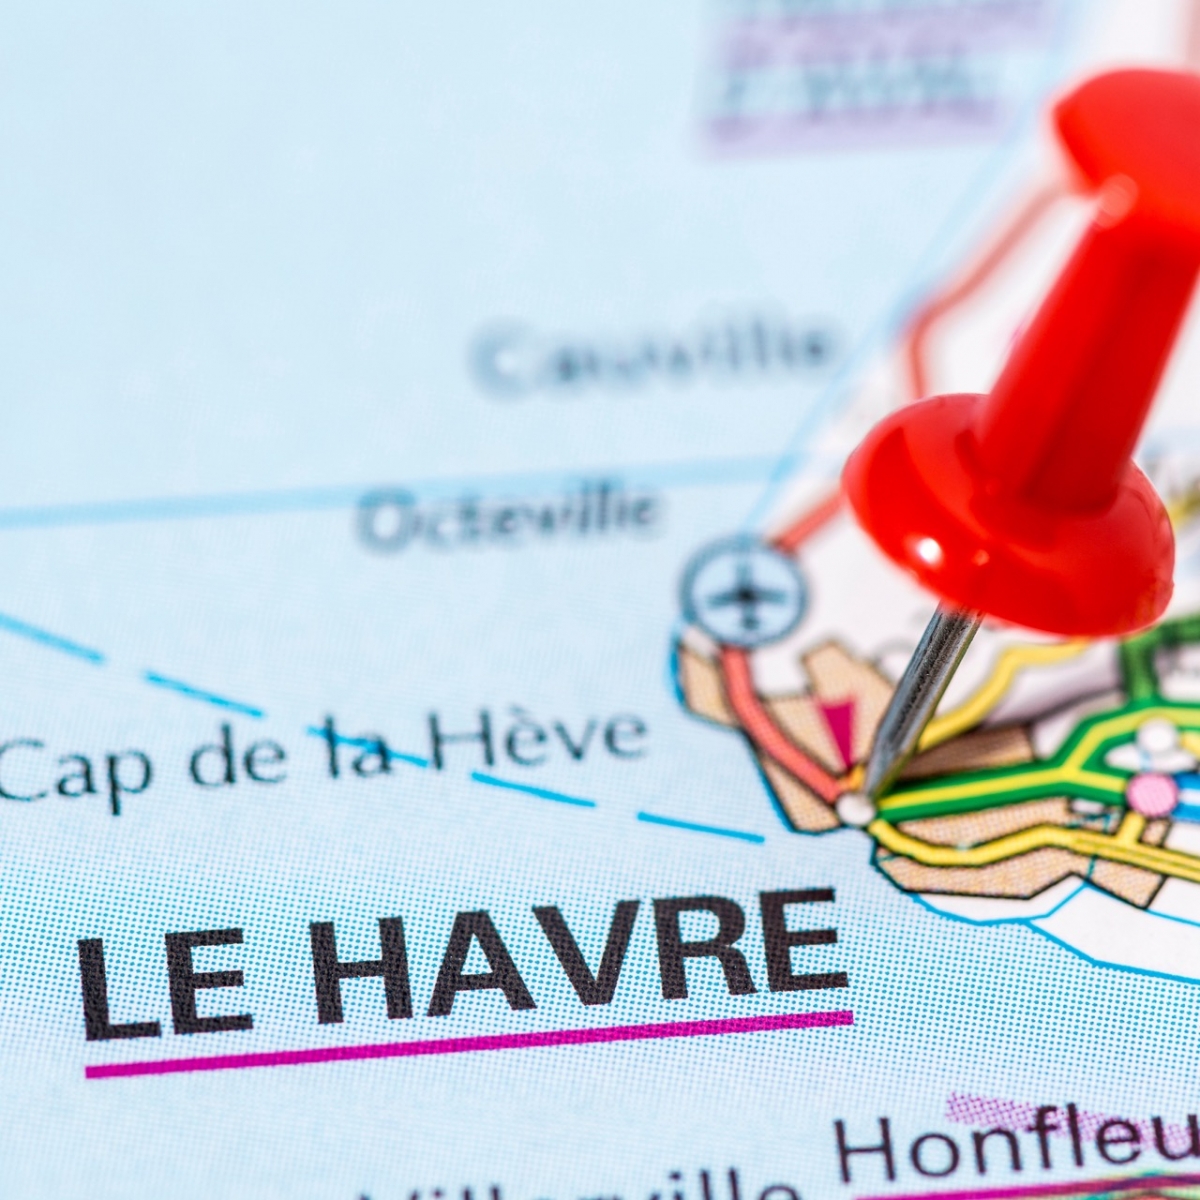 Le Havre, Normandie auf der Karte